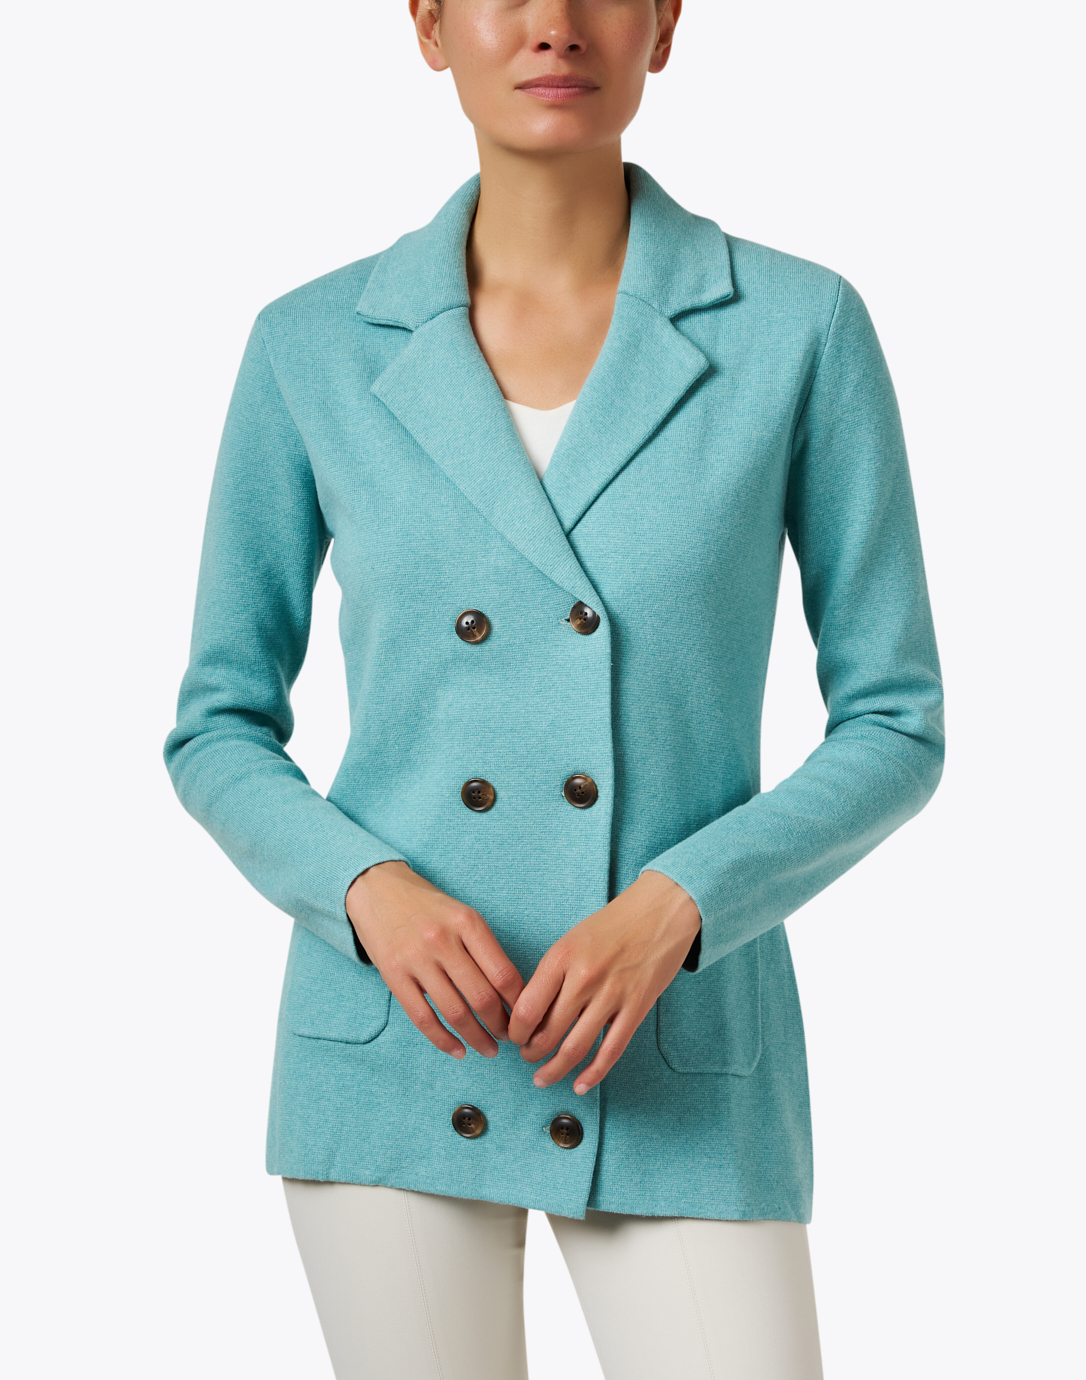 Cashmere | Coat Cotton Blue Milan Burgess Teal